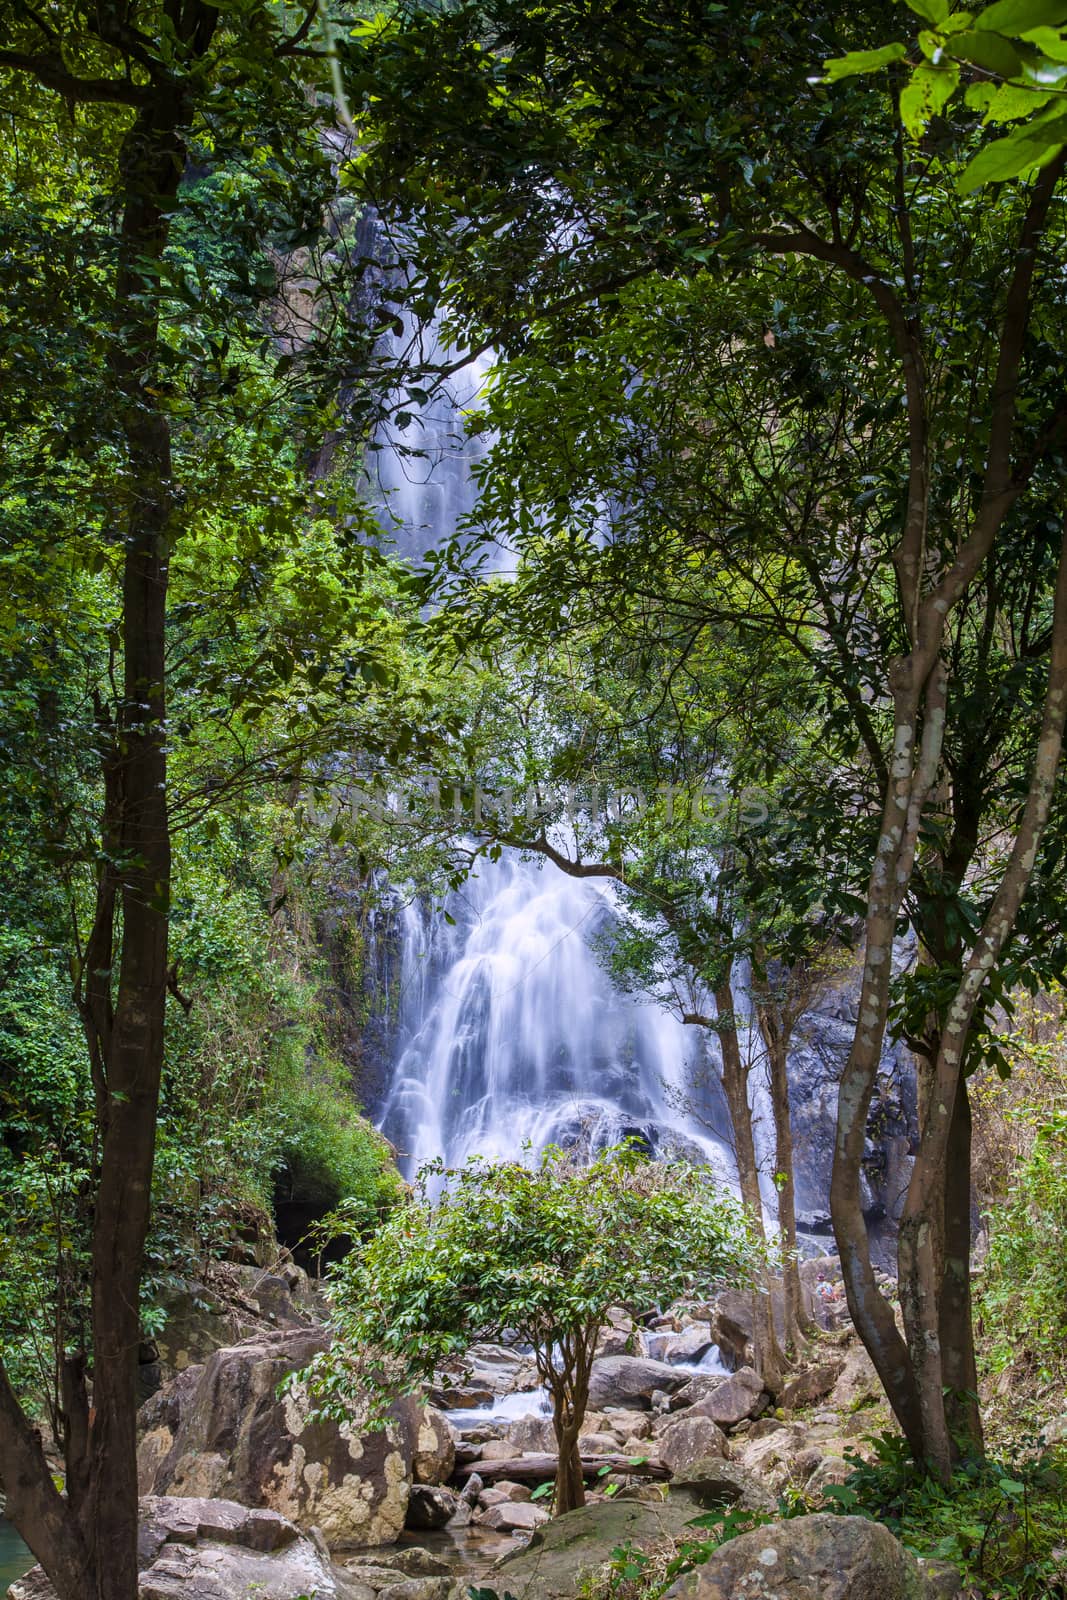  Natural background  waterfall Colorful leaves waterfall thailand tropical, Khao Nan National Park,Sunanta Waterfall Nakhon Si Thammarat Thailand.